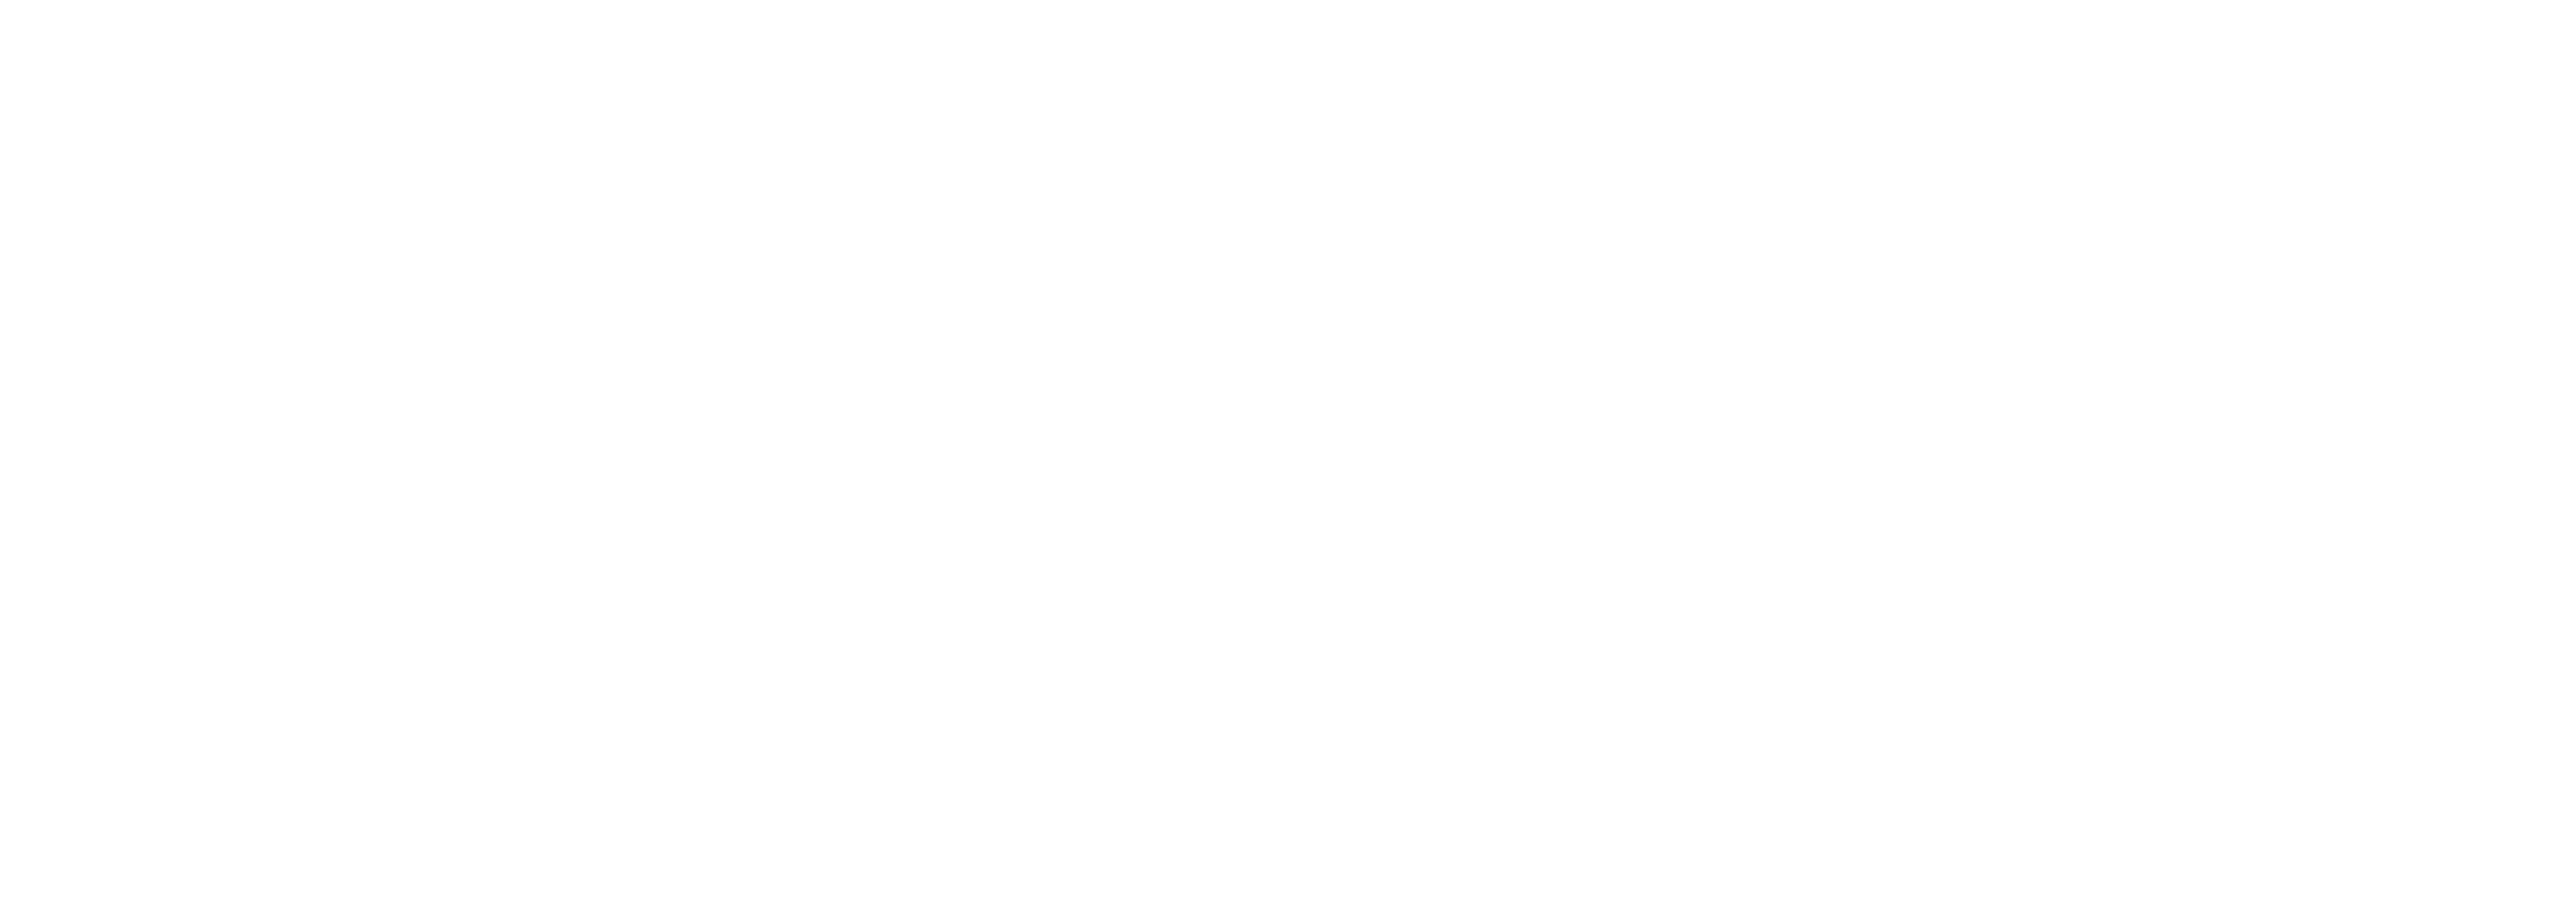 sauce logo white